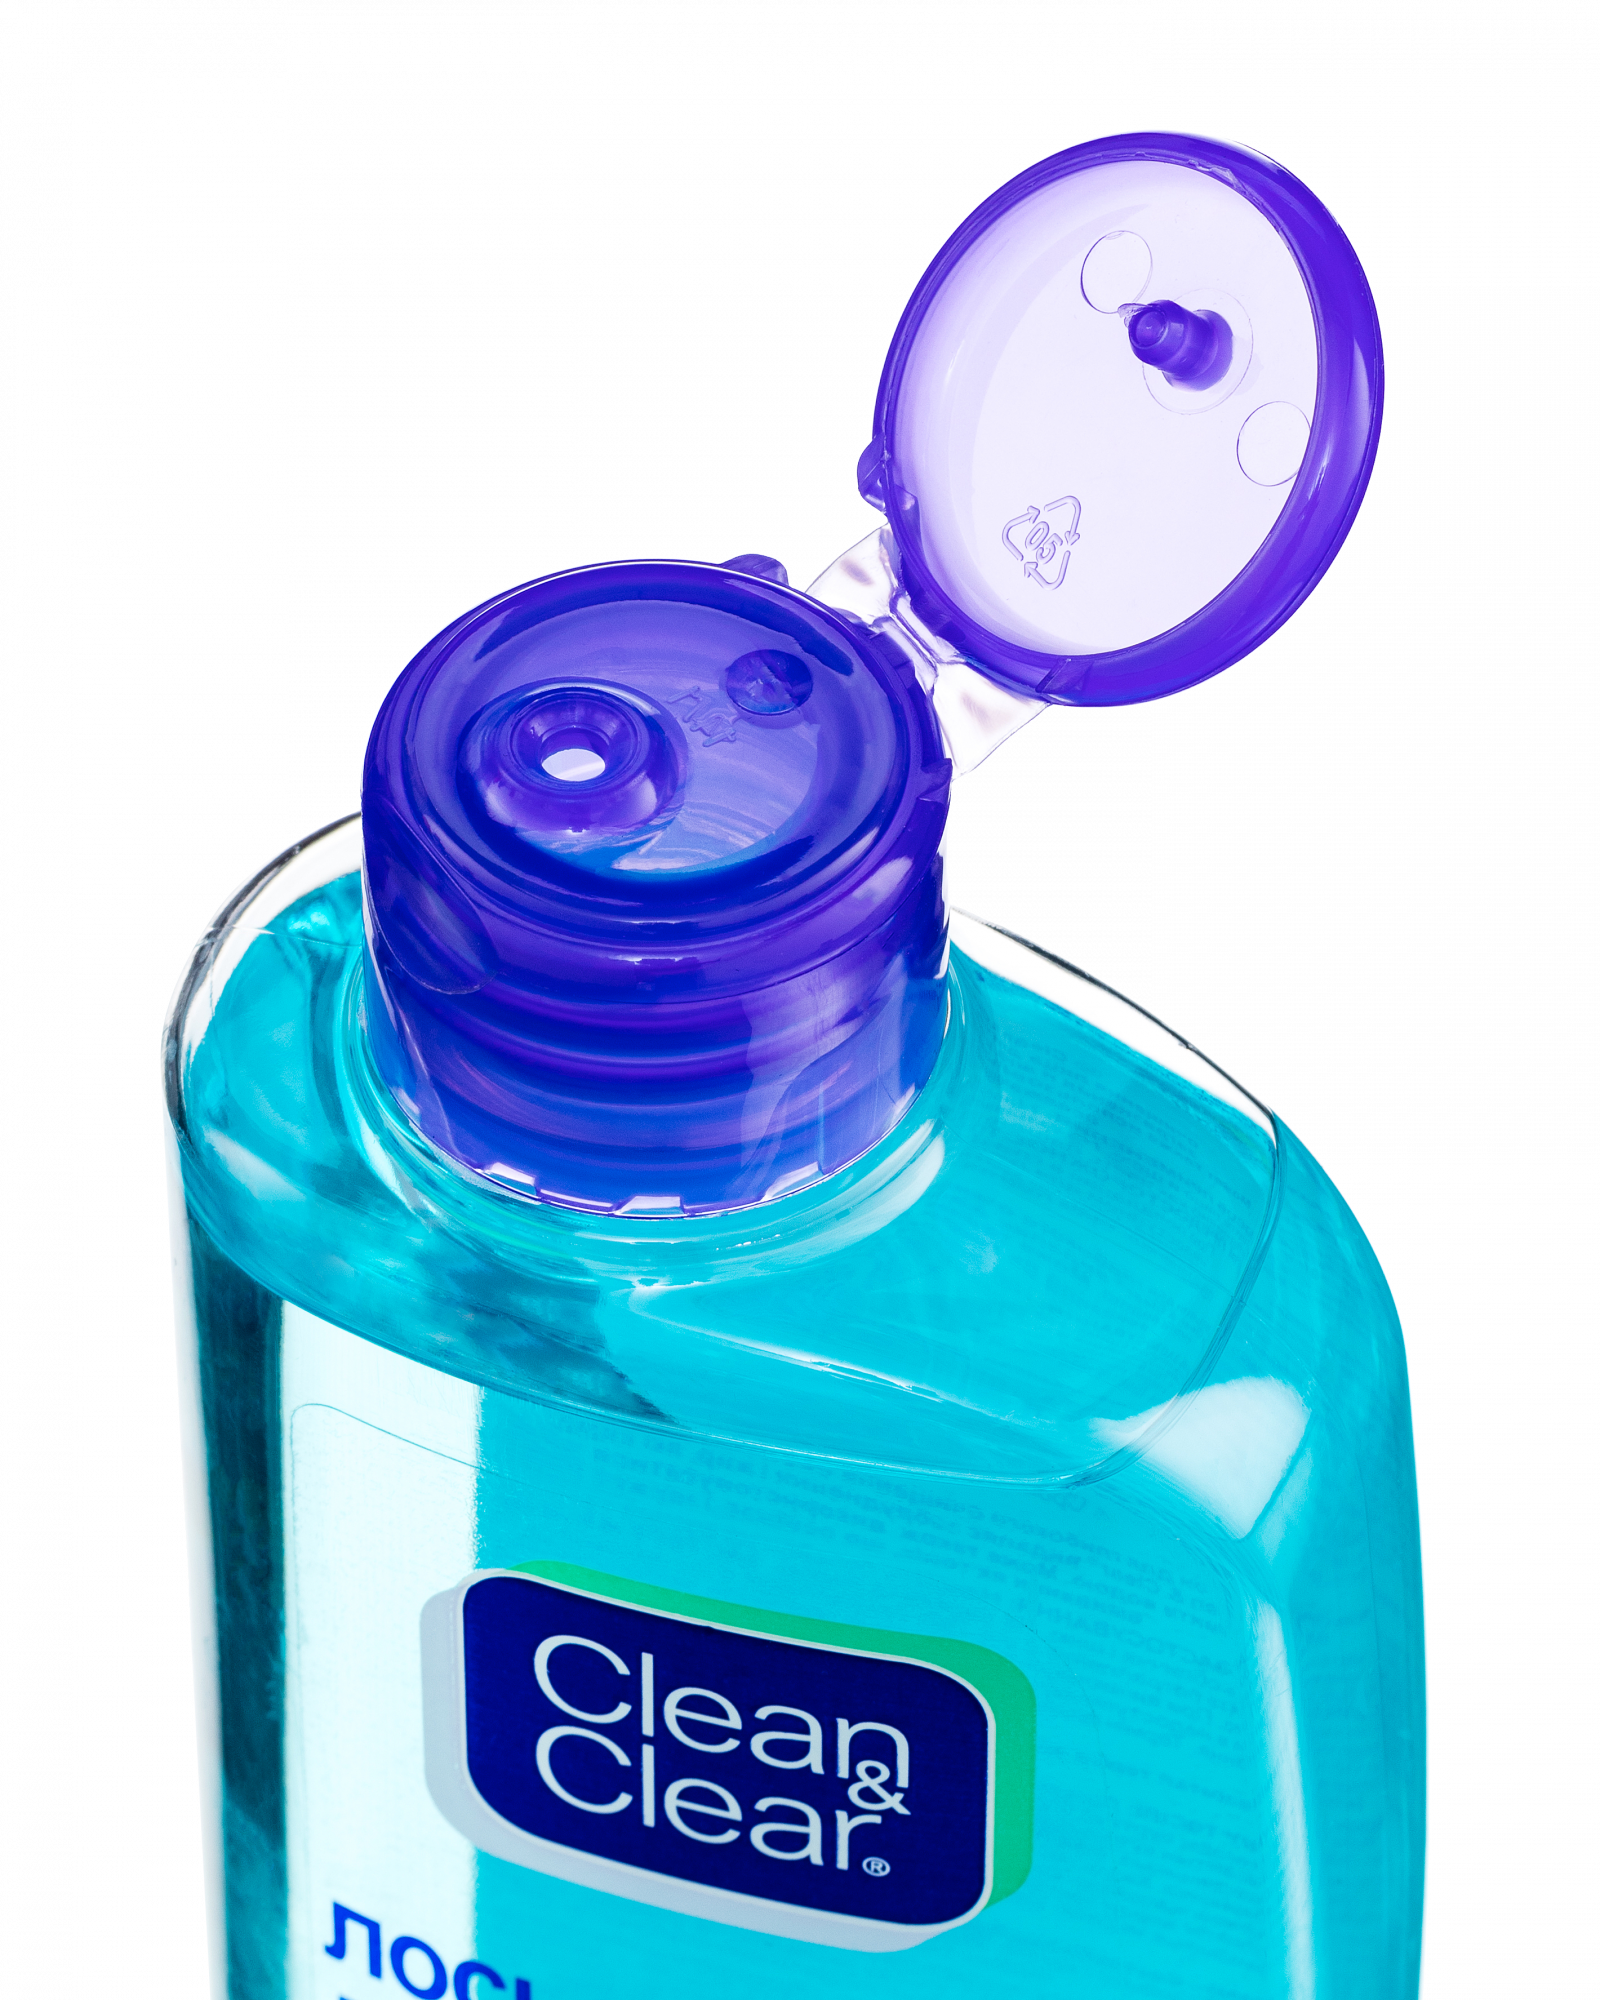 Лосьон Клеан клеар. Clean & Clear лосьон для глубокого очищения лица. Лосьон от прыщей clean Clear. Clean & Clear лосьон для глубокого очищения лица, для чувствительной кожи.